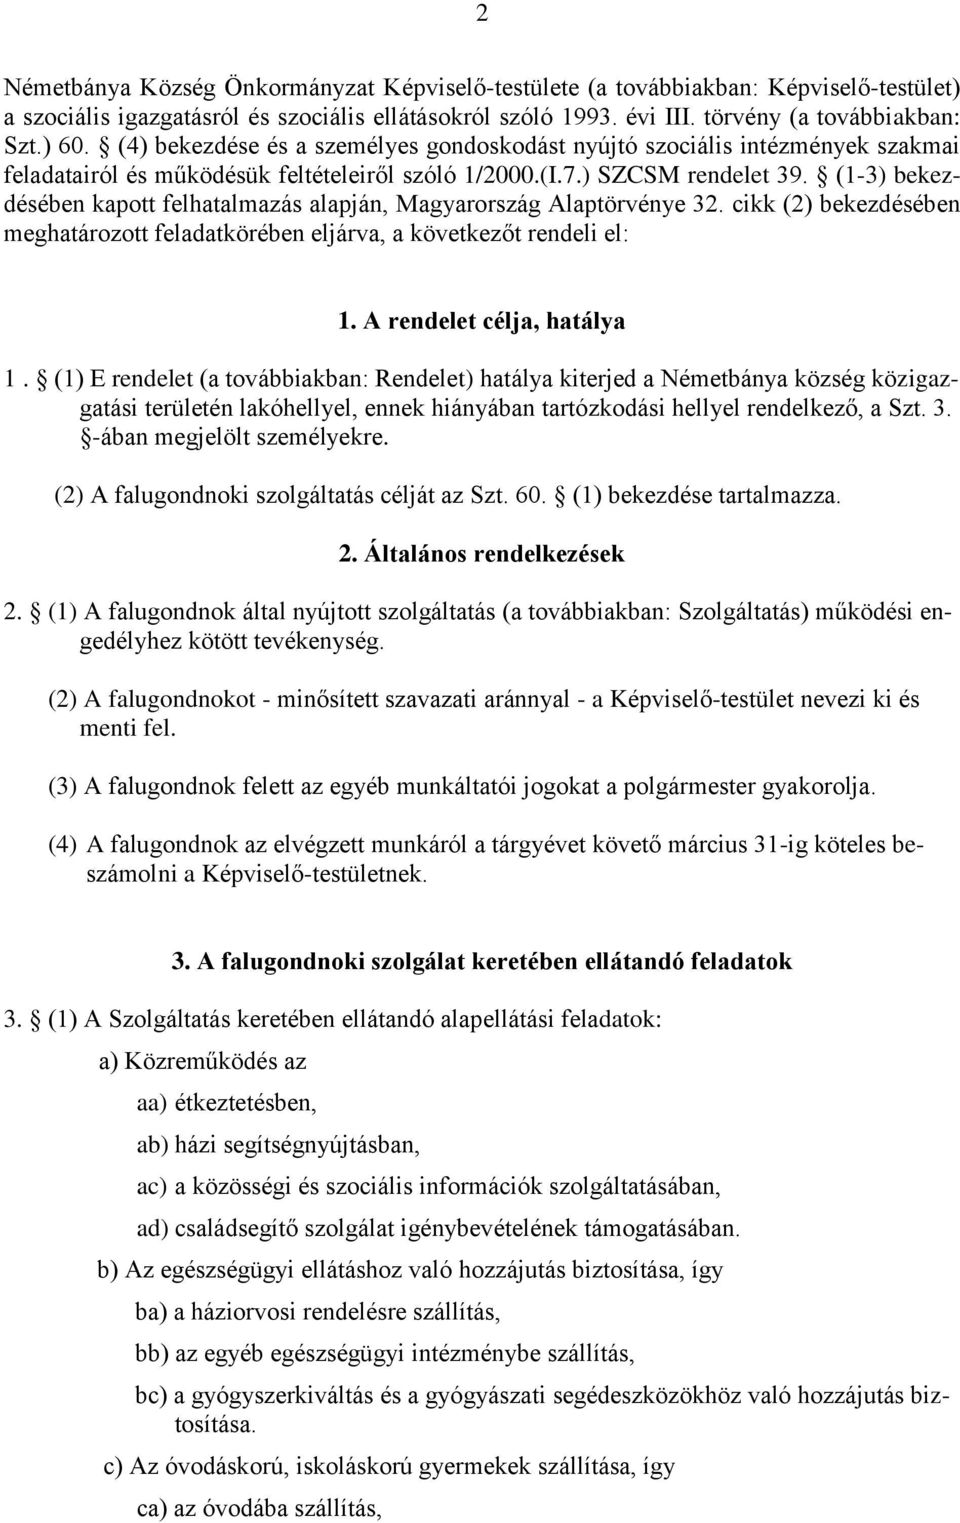 (1-3) bekezdésében kapott felhatalmazás alapján, Magyarország Alaptörvénye 32. cikk (2) bekezdésében meghatározott feladatkörében eljárva, a következőt rendeli el: 1. A rendelet célja, hatálya 1.